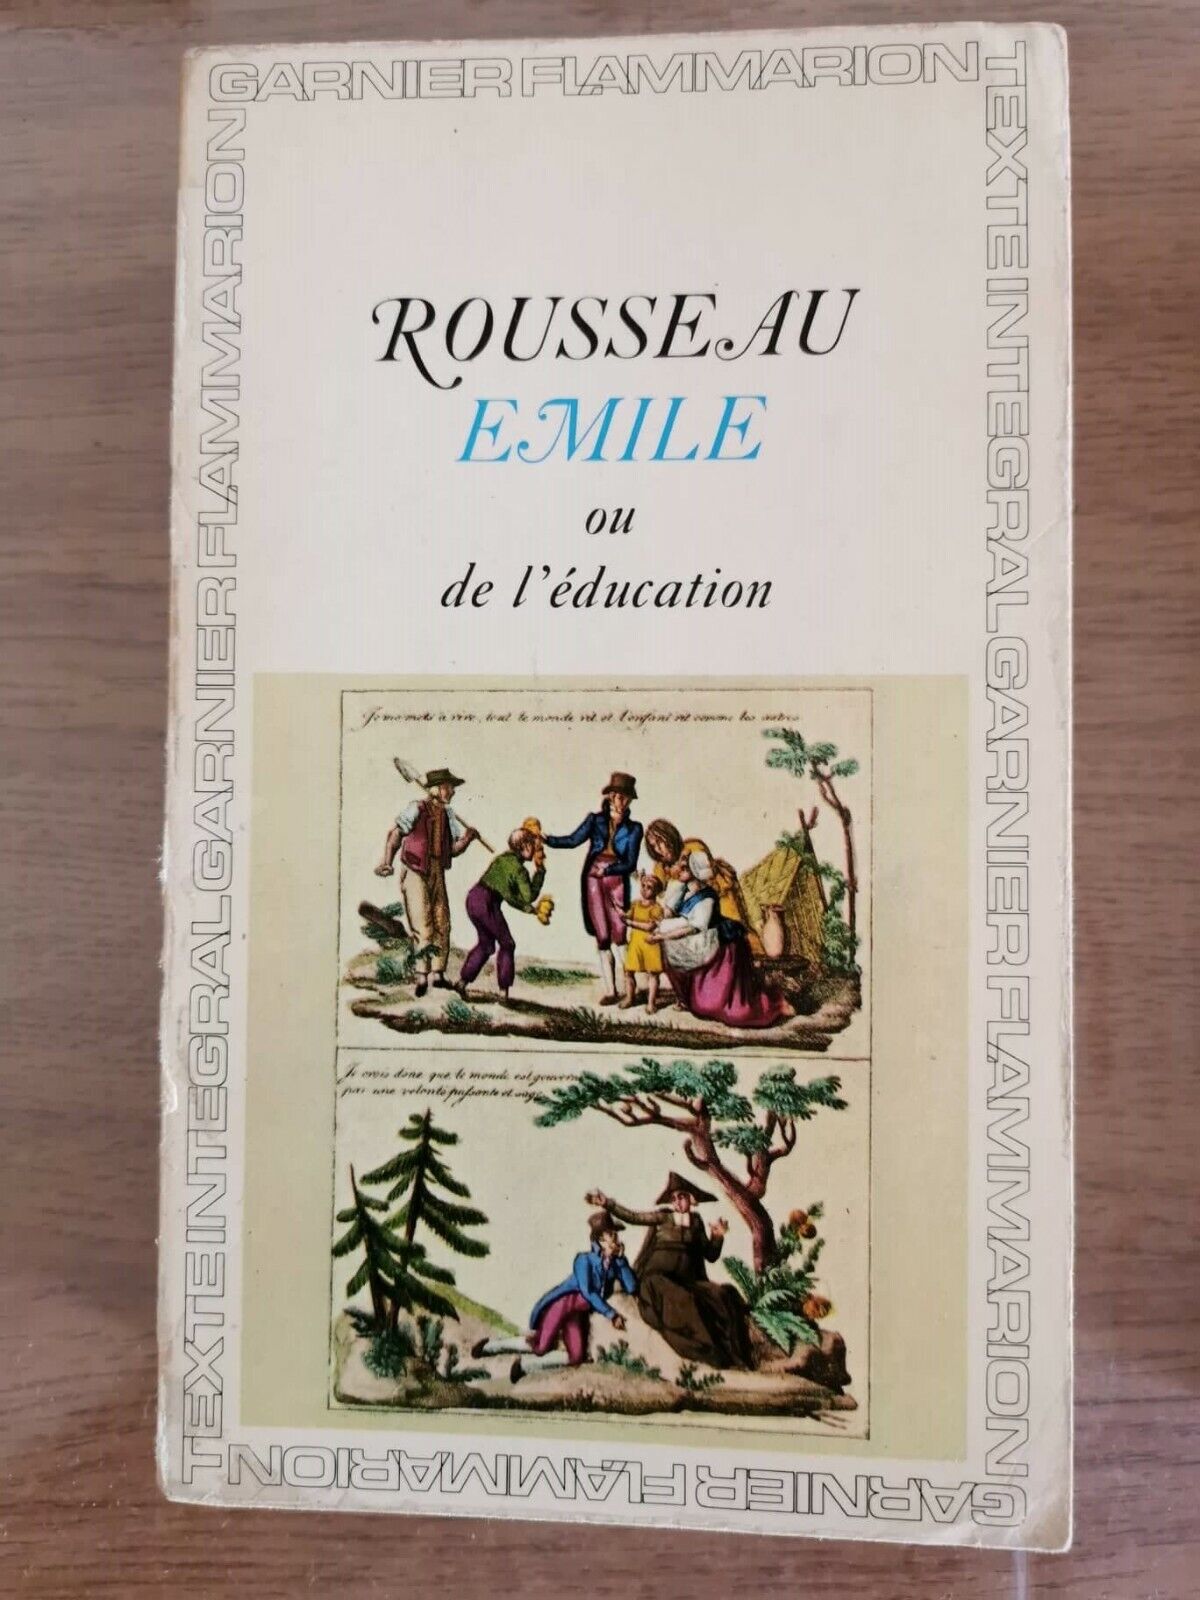 Emile ou de l'education - J. Rousseau - Garnier - 1966 - AR